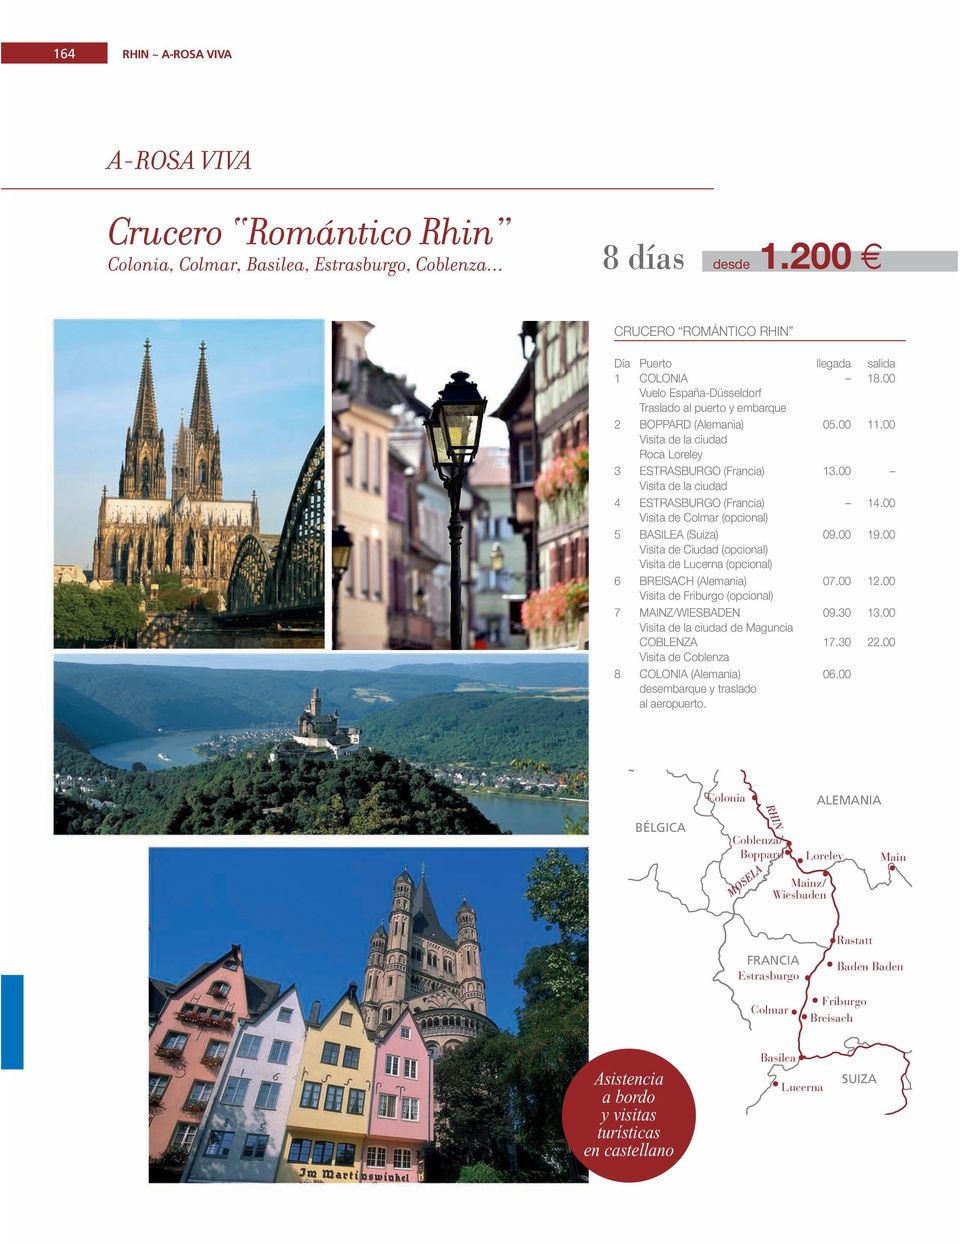 00 Visita de Colmar (opcional) 5 BASILEA (Suiza) 09.00 19.00 Visita de Ciudad (opcional) Visita de Lucerna (opcional) 6 BREISACH (Alemania) 07.00 12.